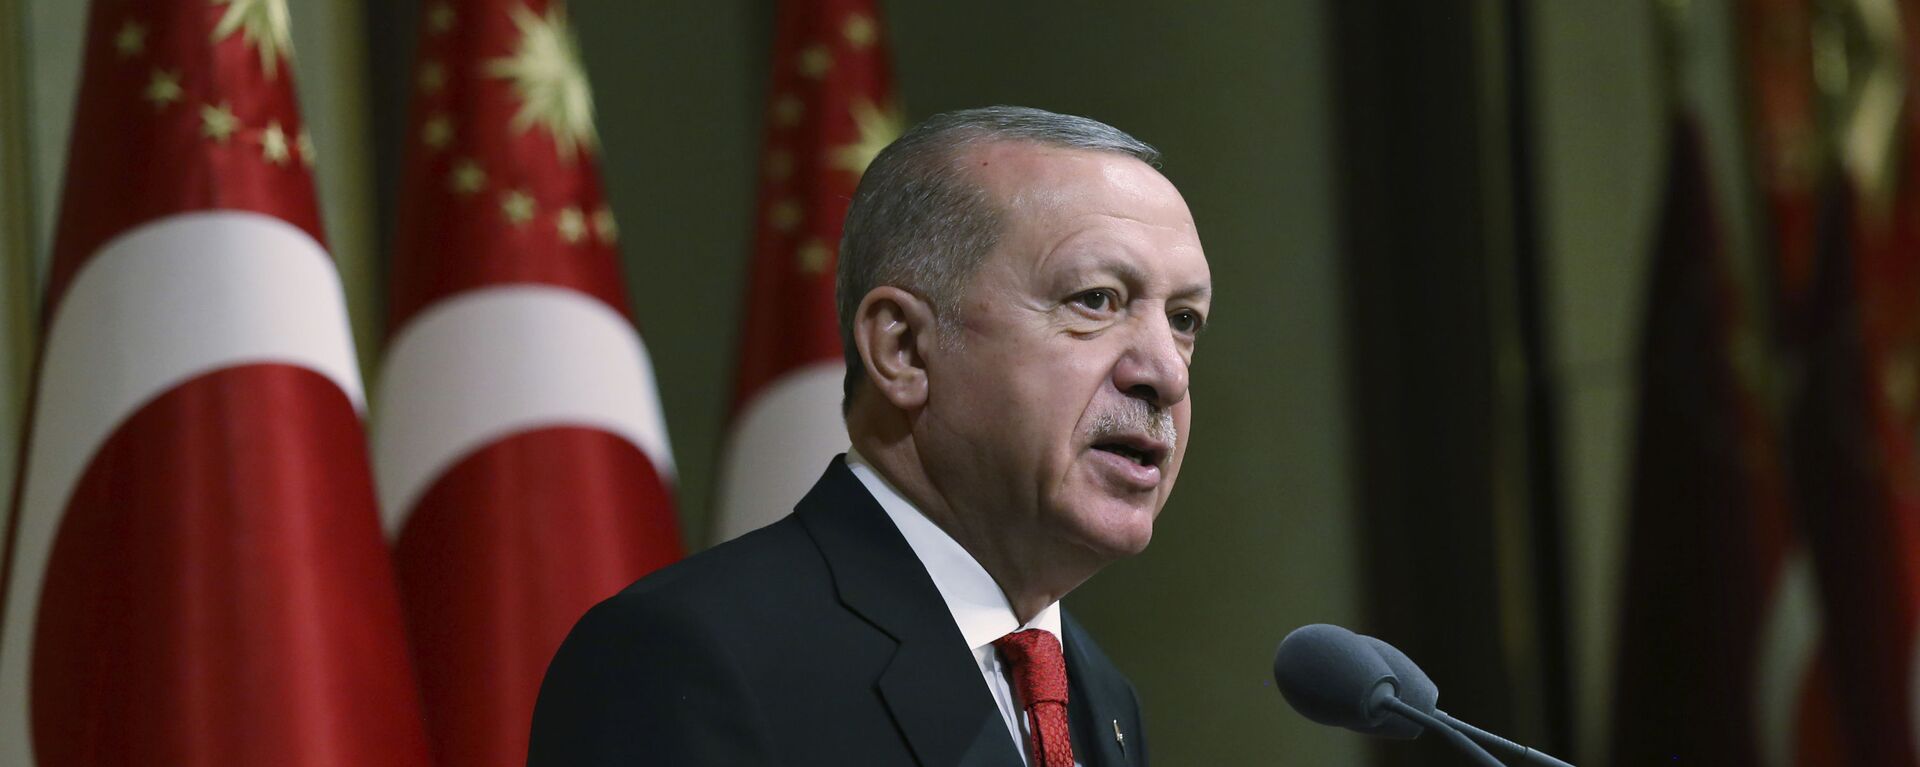 Tổng thống Thổ Nhĩ Kỳ Recep Tayyip Erdogan phát biểu tại dinh thự tổng thống ở Ankara - Sputnik Việt Nam, 1920, 18.10.2021